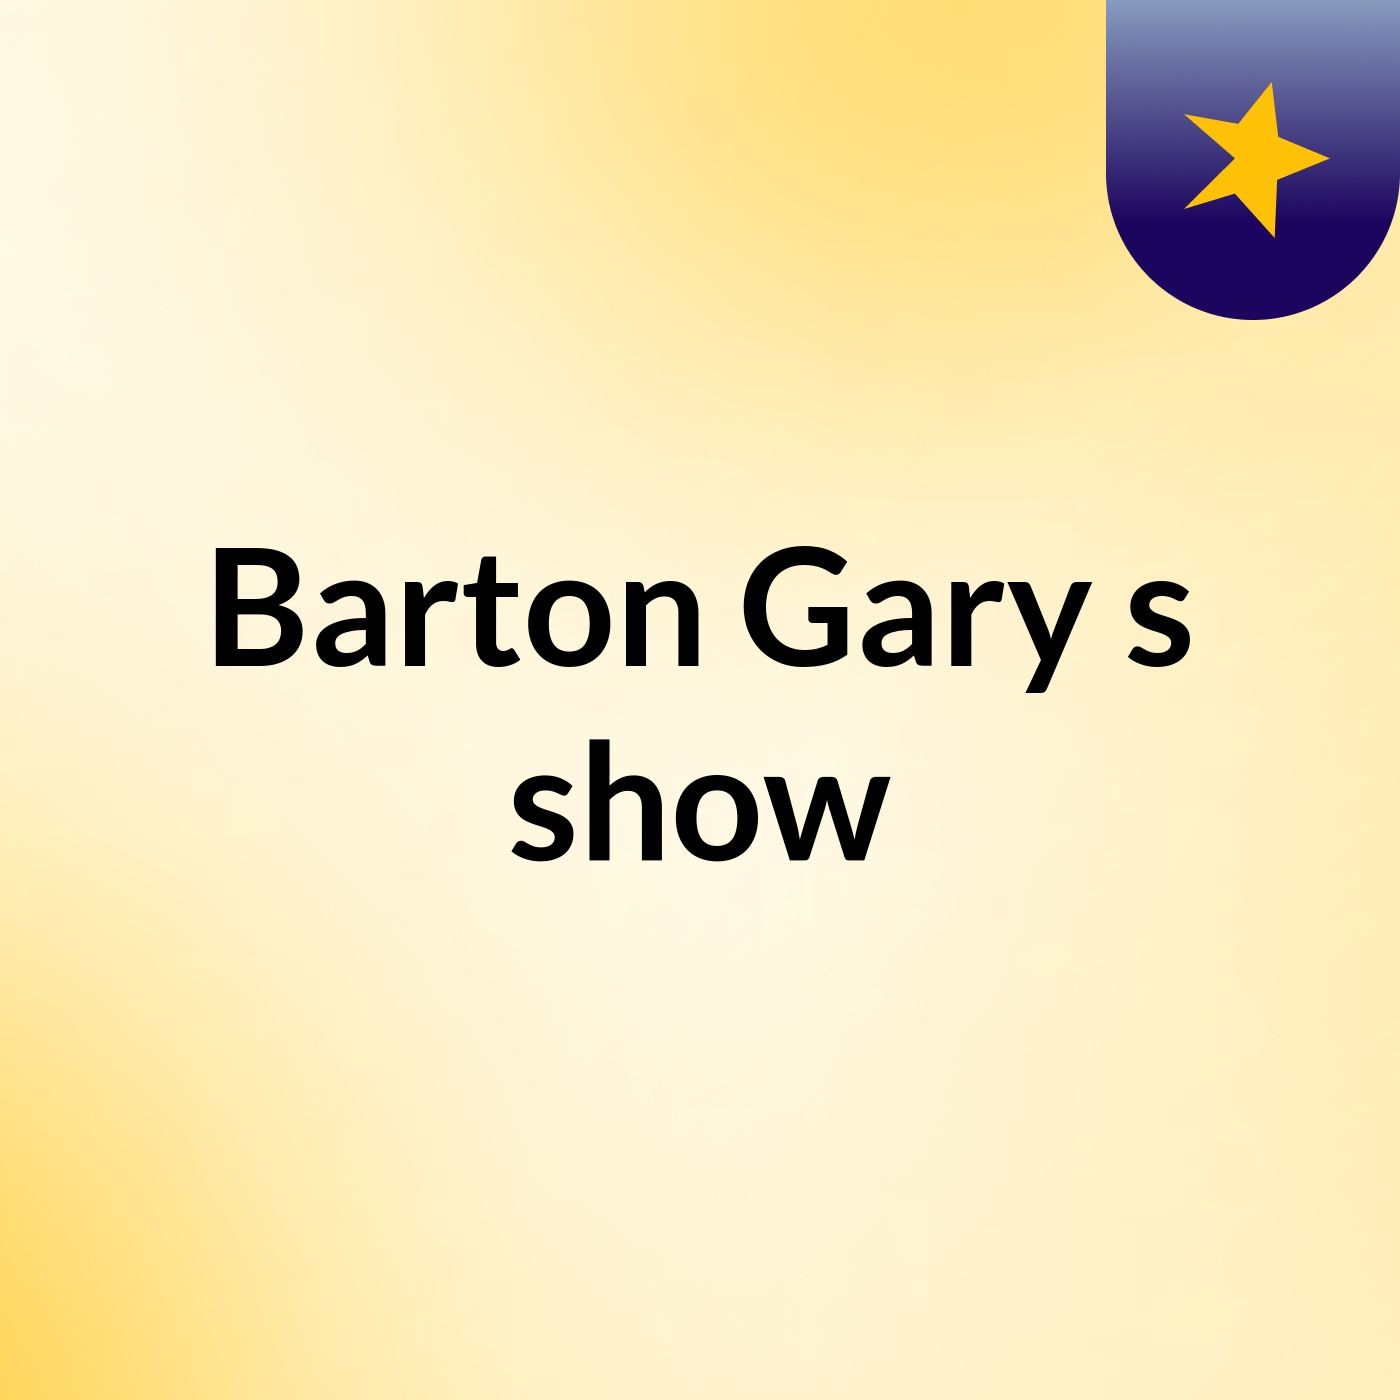 Episode 1 - Barton Gary's show